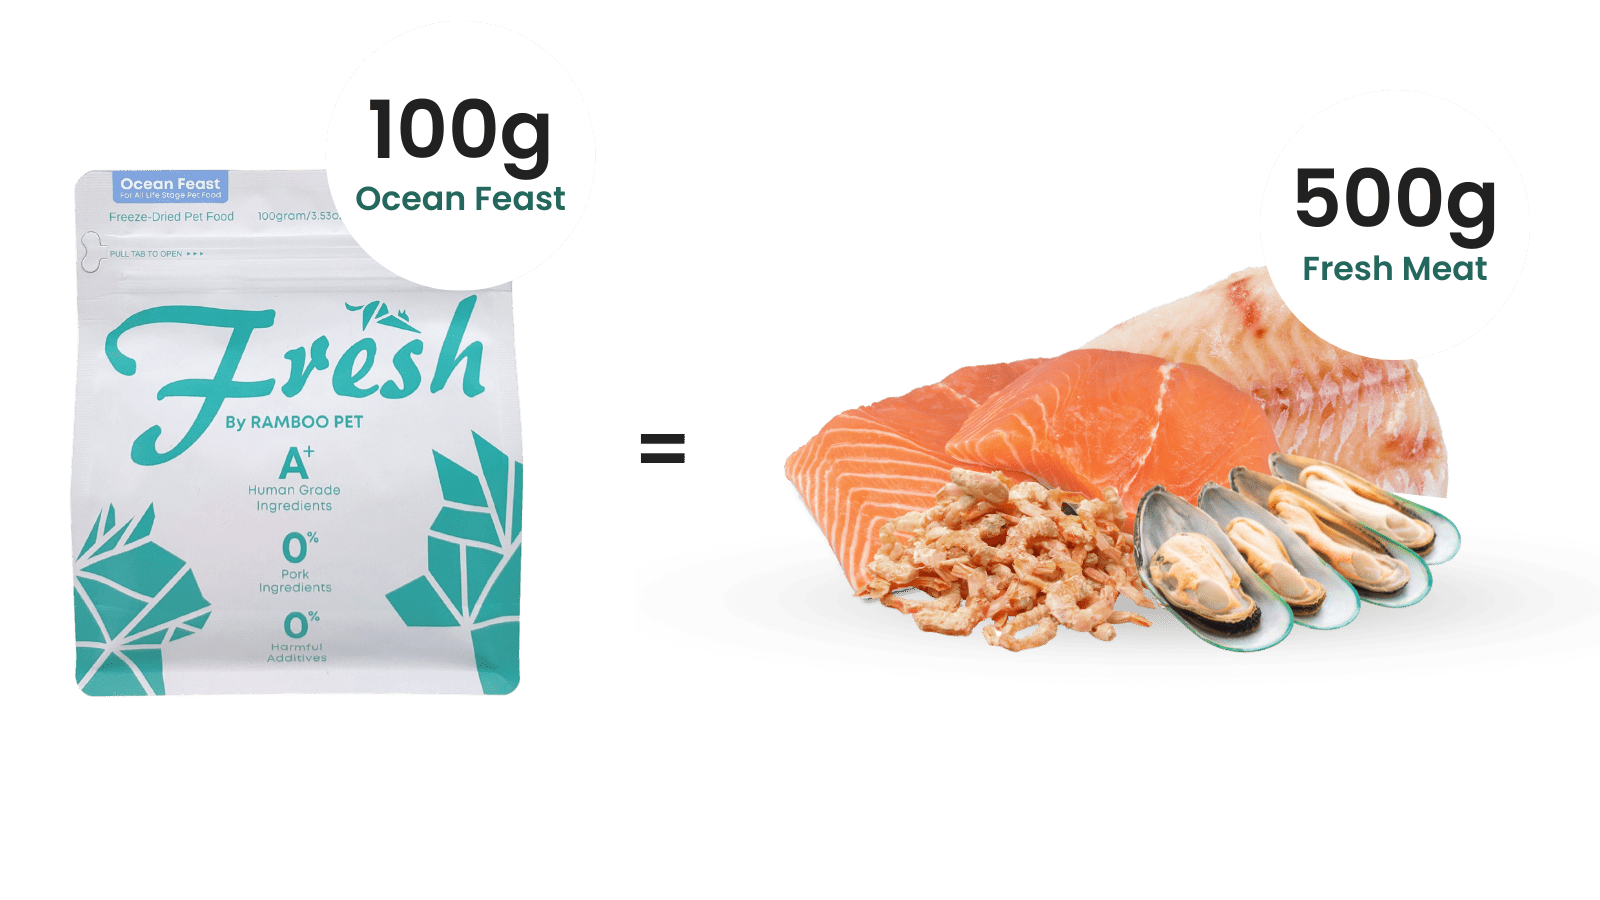 100g of Ocean Feast = 500g of Fresh Salmon